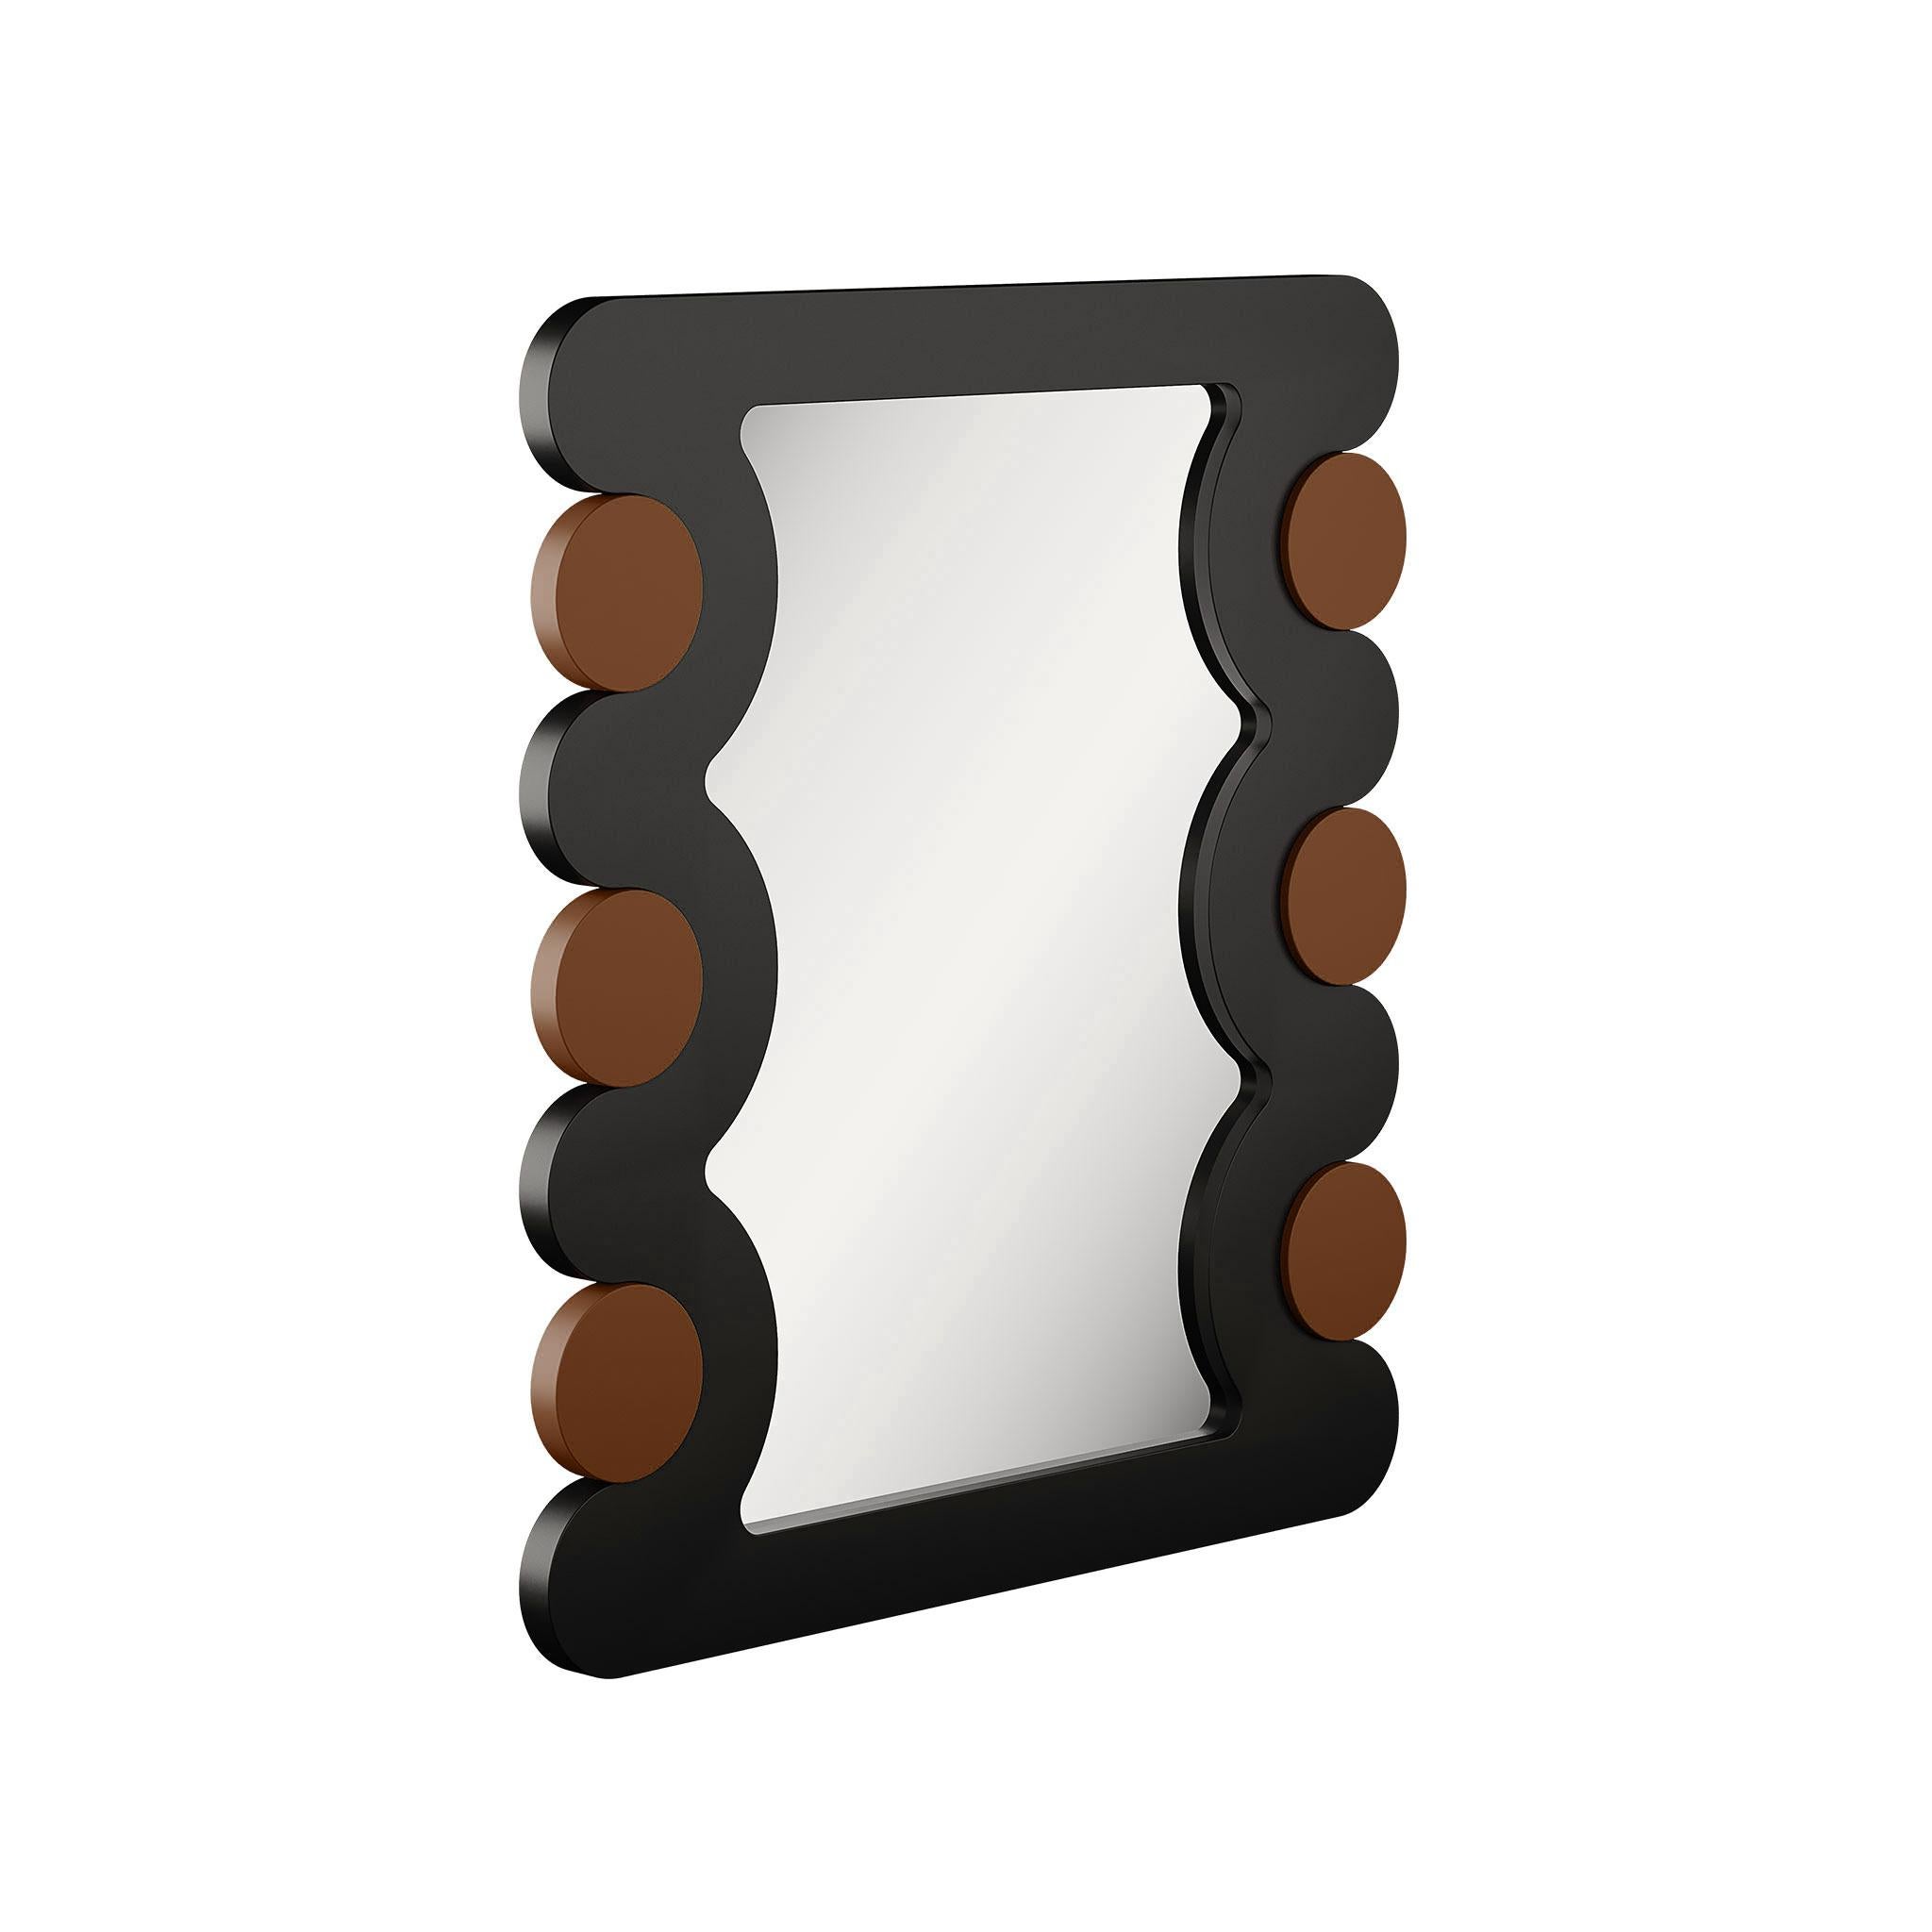 Erhöhen Sie die Ästhetik Ihres Raumes mit unserem Spiegel aus lackiertem Holz in Braun- und Schwarztönen, der sorgfältig von Hand geschnitzt und handgefertigt wurde. Dieser Spiegel ist nicht nur ein funktioneller Gegenstand, sondern ein kühner